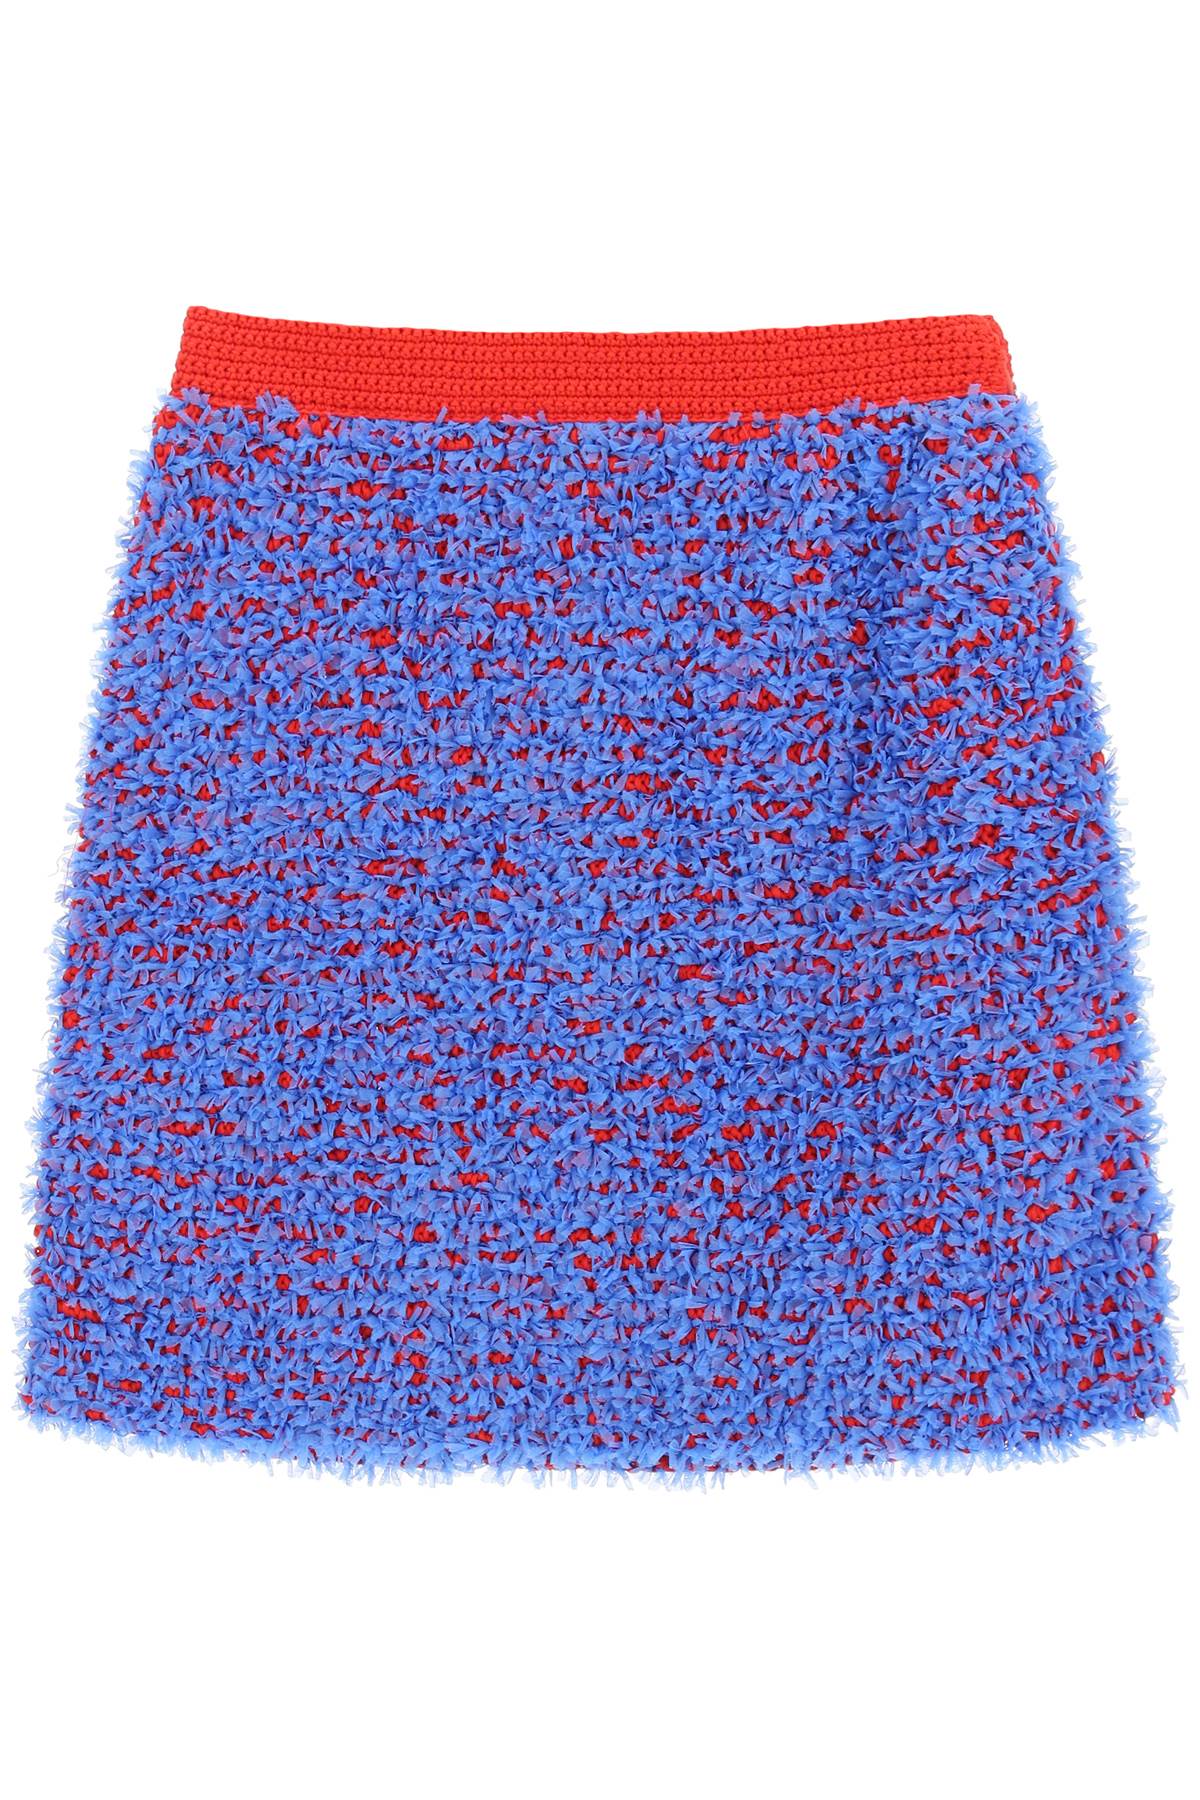 Tory burch confetti tweed mini skirt-0